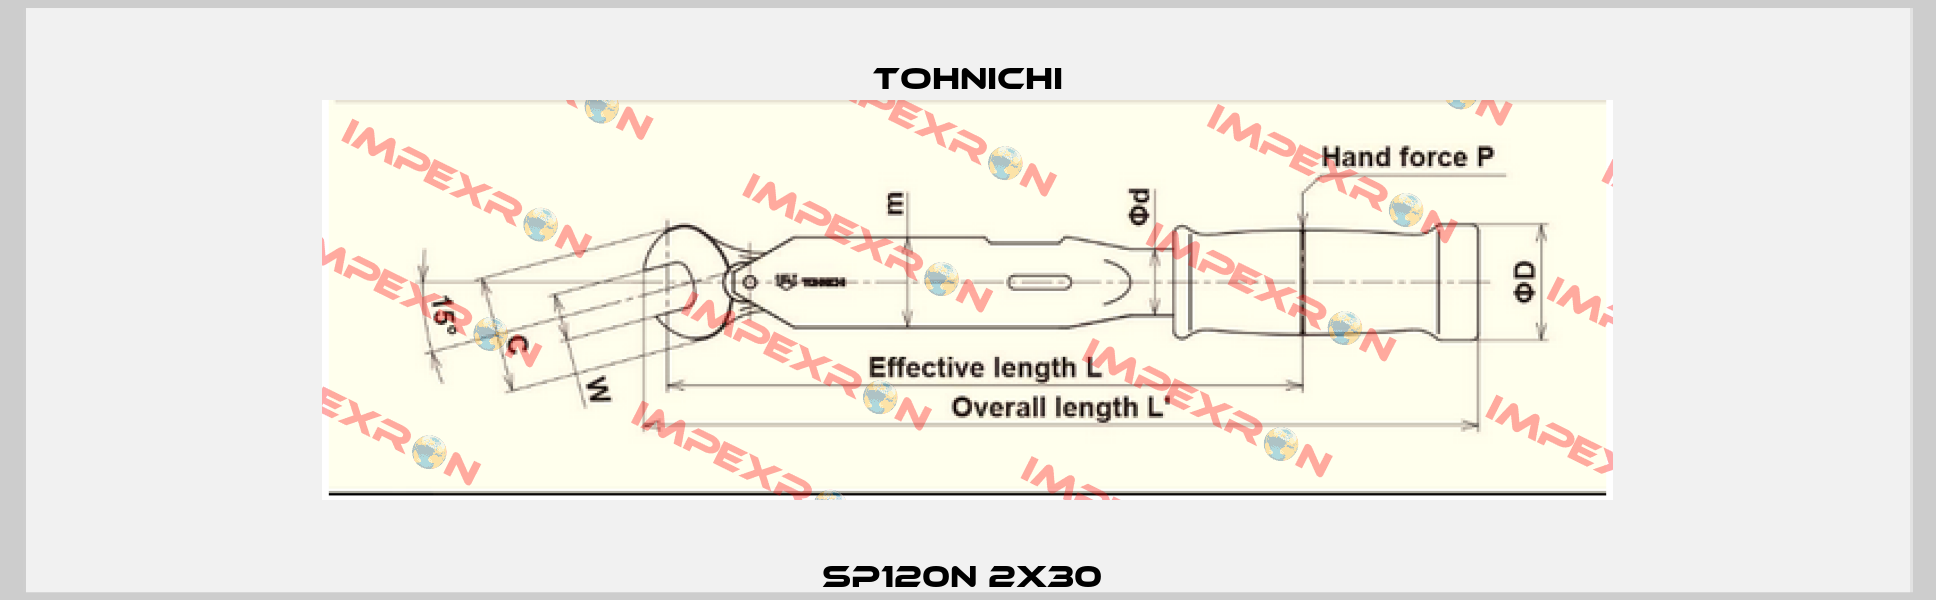 SP120N 2x30  Tohnichi